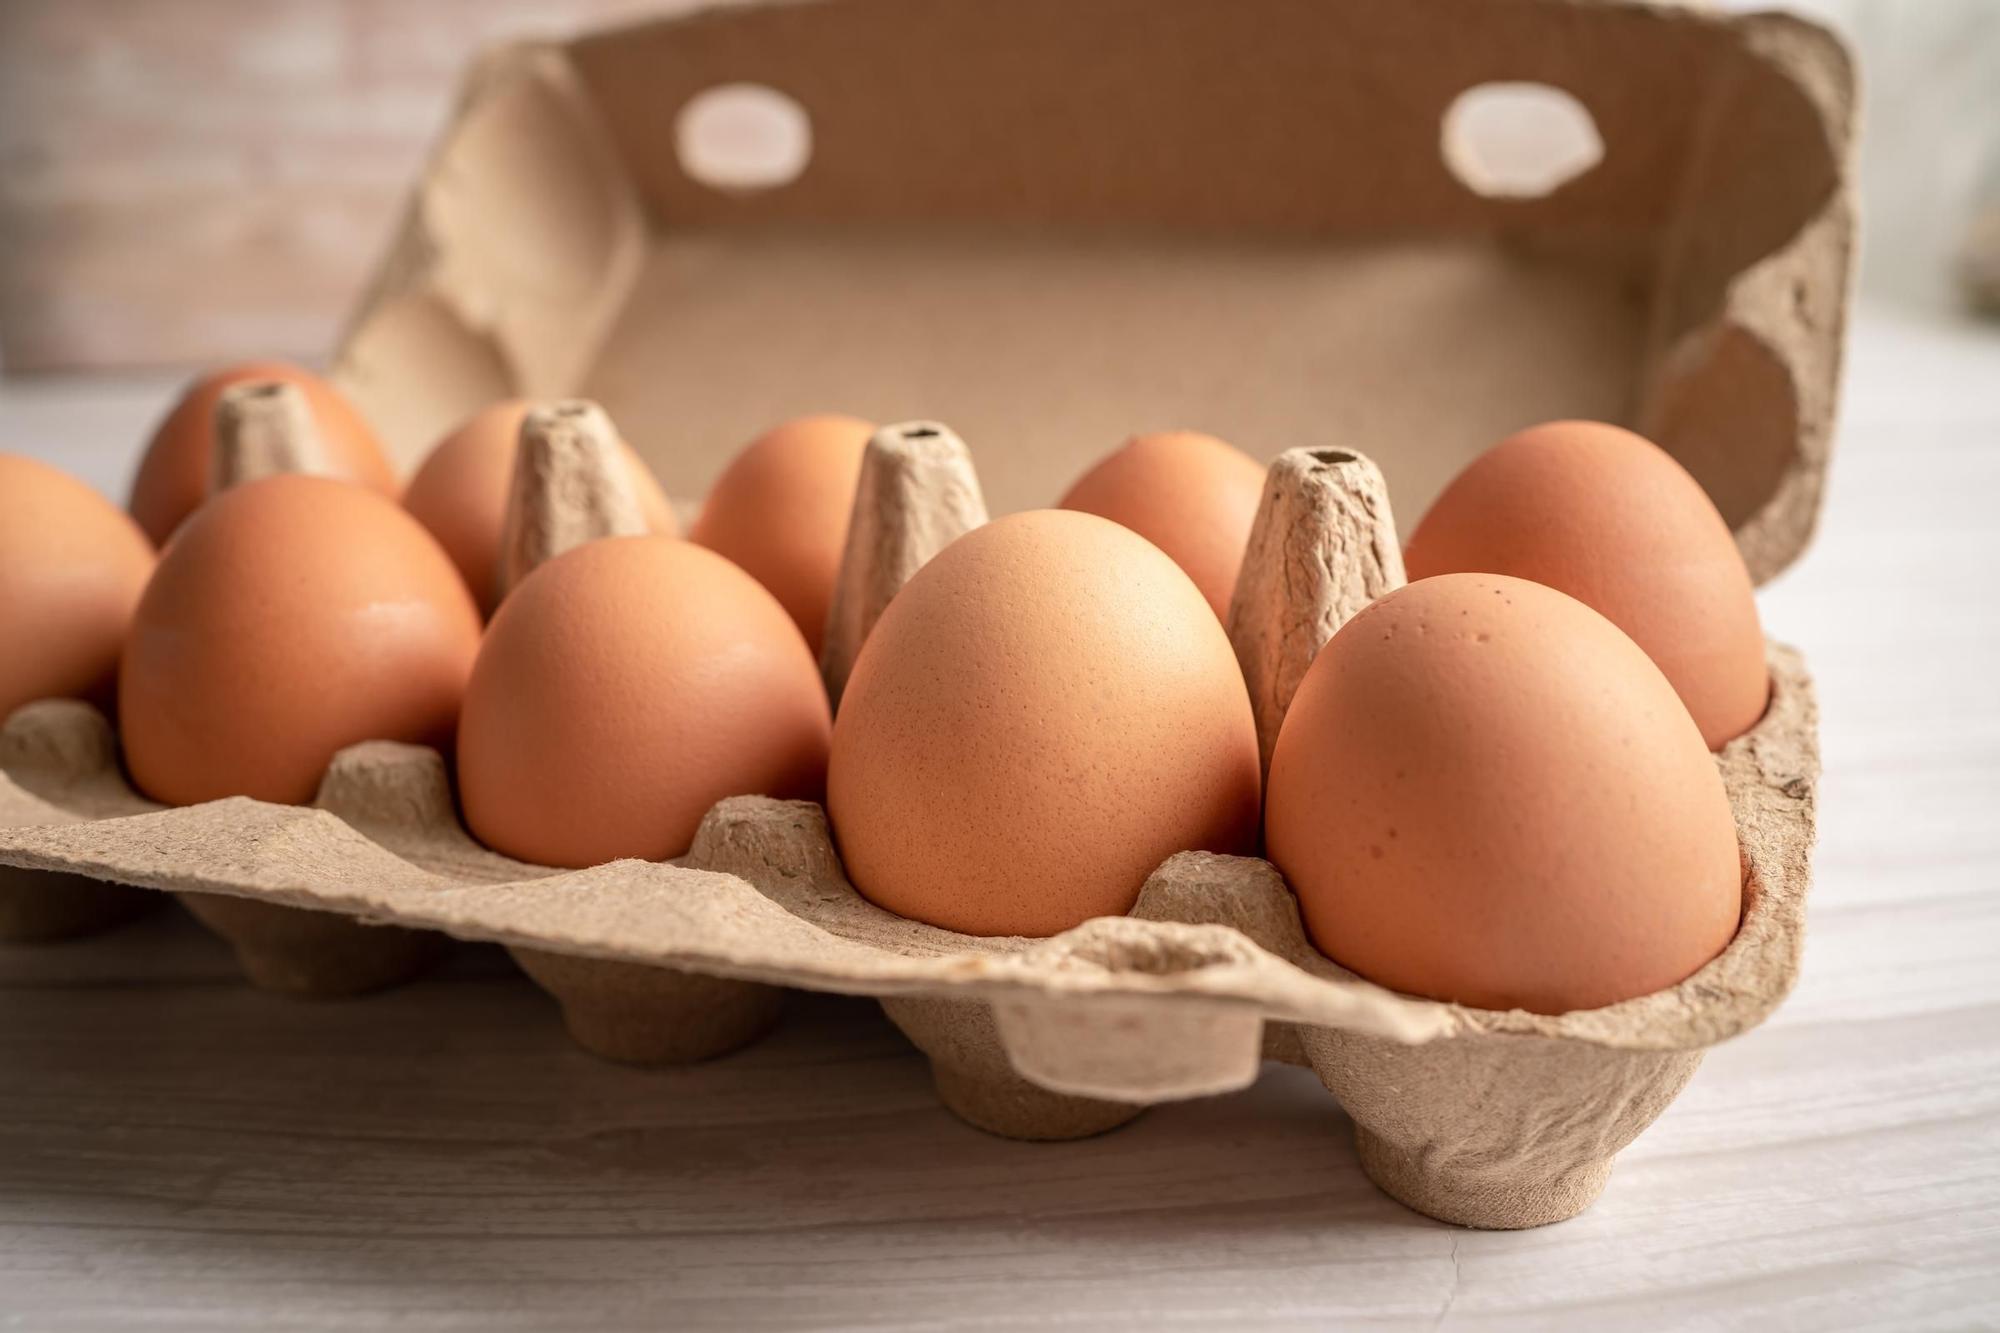 COCER HUEVOS RAPIDO Y FACIL  Adiós a las largas esperas para cocer los  huevos: el truco infalible para tenerlos en seguida